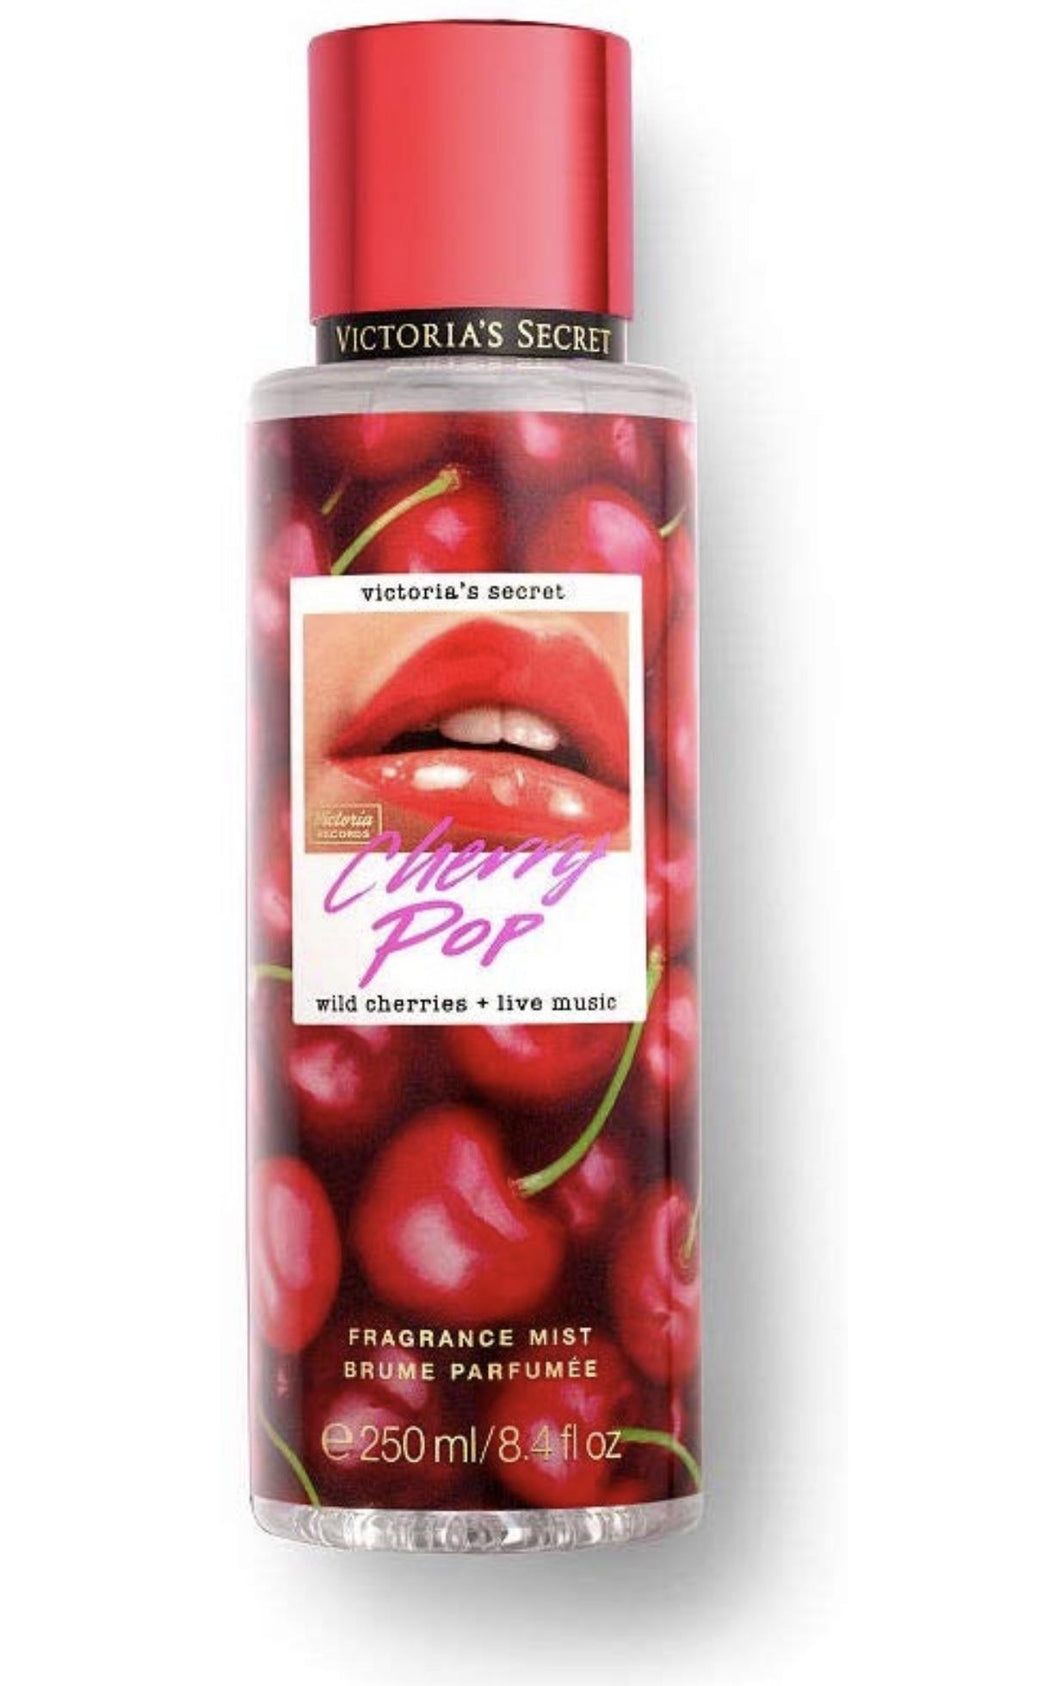 VS Cherry Pop Fragrance Mist